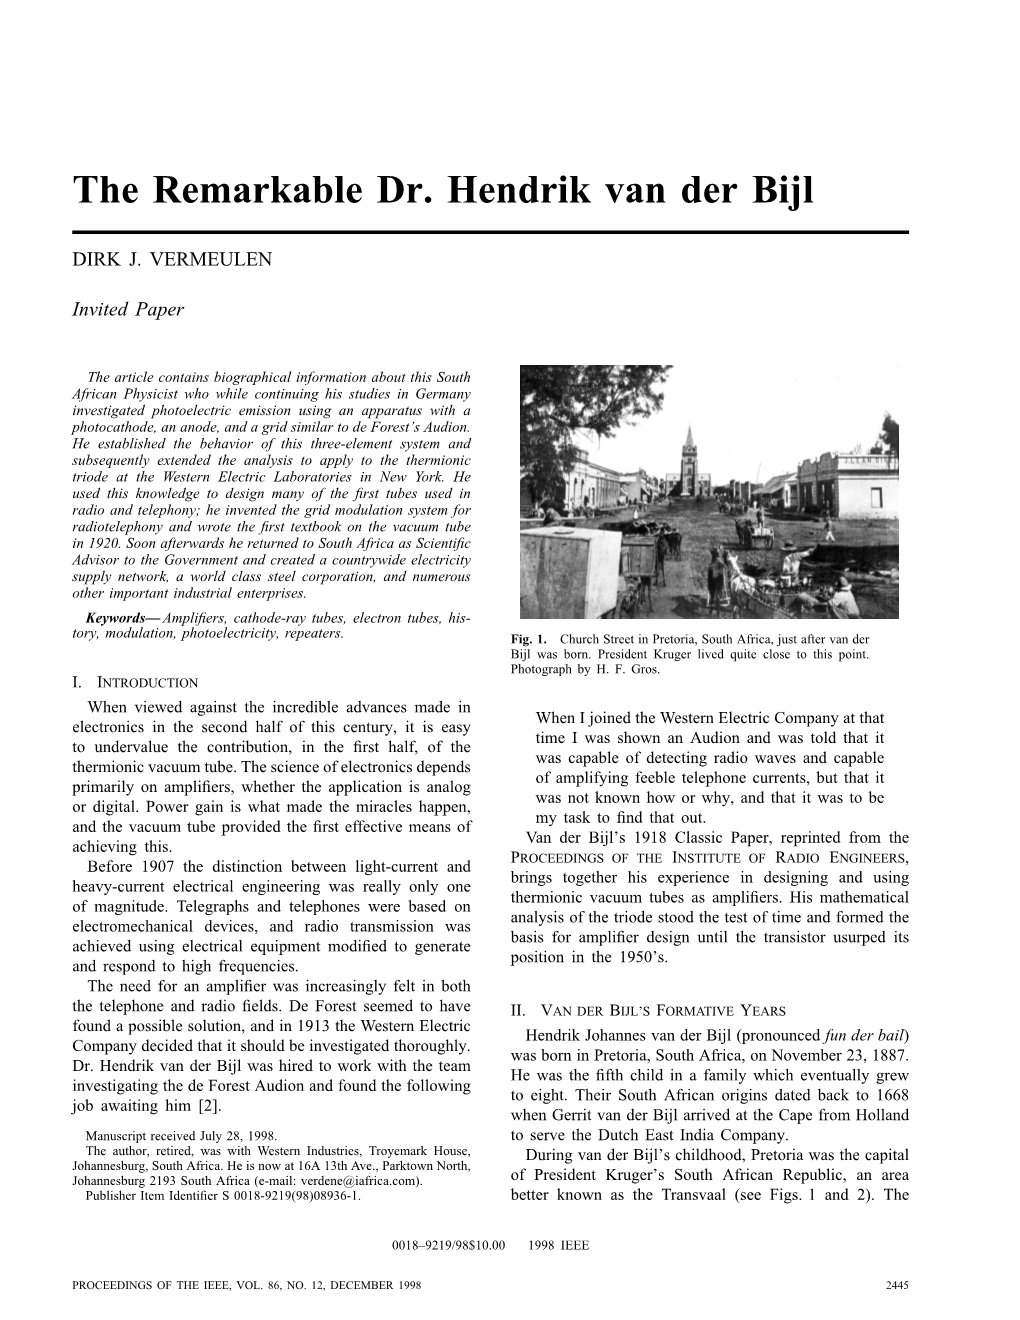 The Remarkable Dr. Hendrik Van Der Bijl